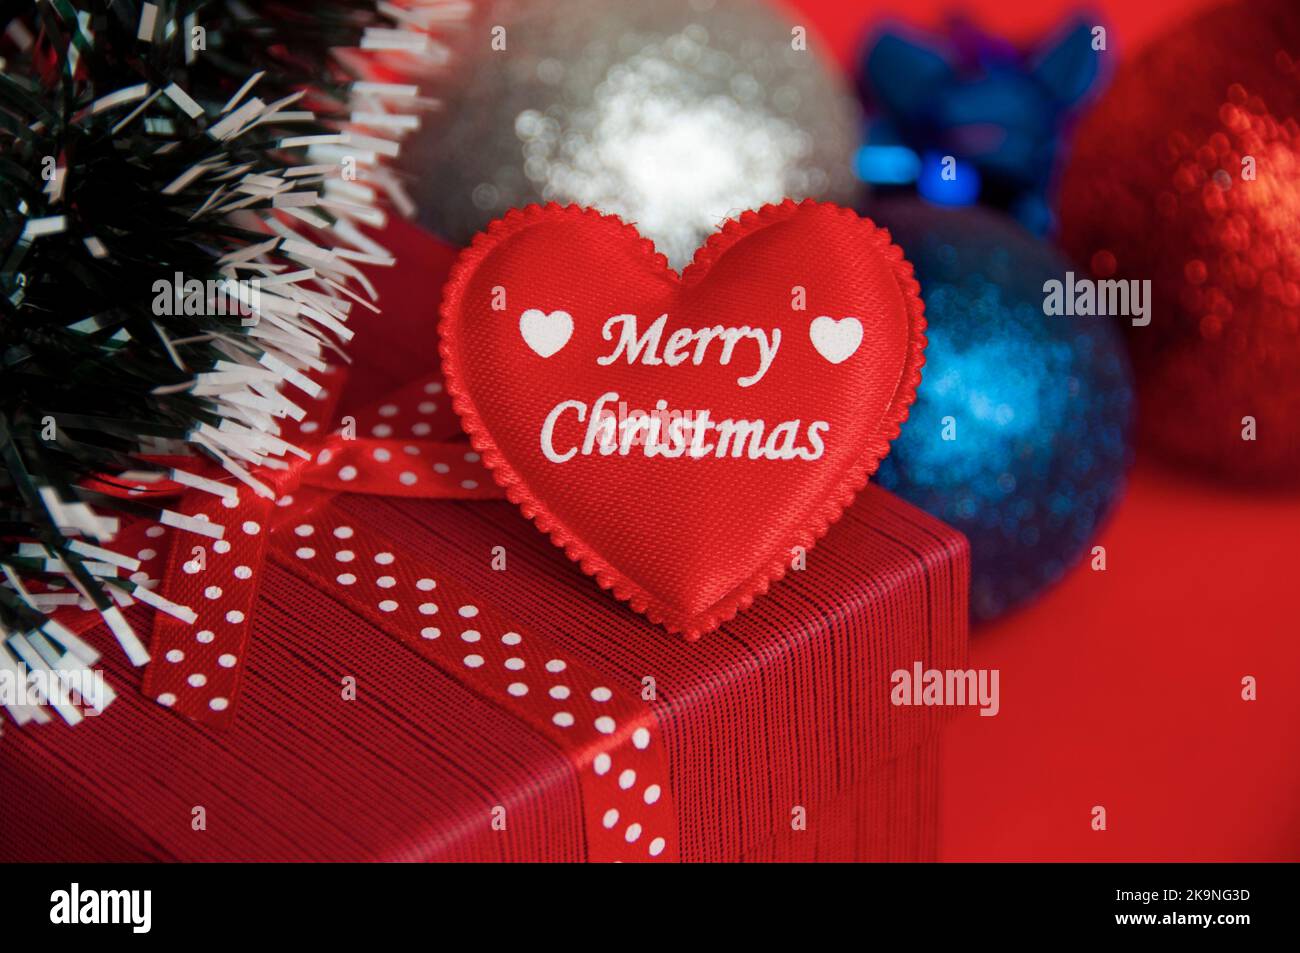 Frohe Weihnachten Text auf Herz-Form auf der Oberseite der roten Farbe Geschenk mit Weihnachtsdekoration Hintergrund. Weihnachtsgeschenk und Copy Space Konzept. Stockfoto